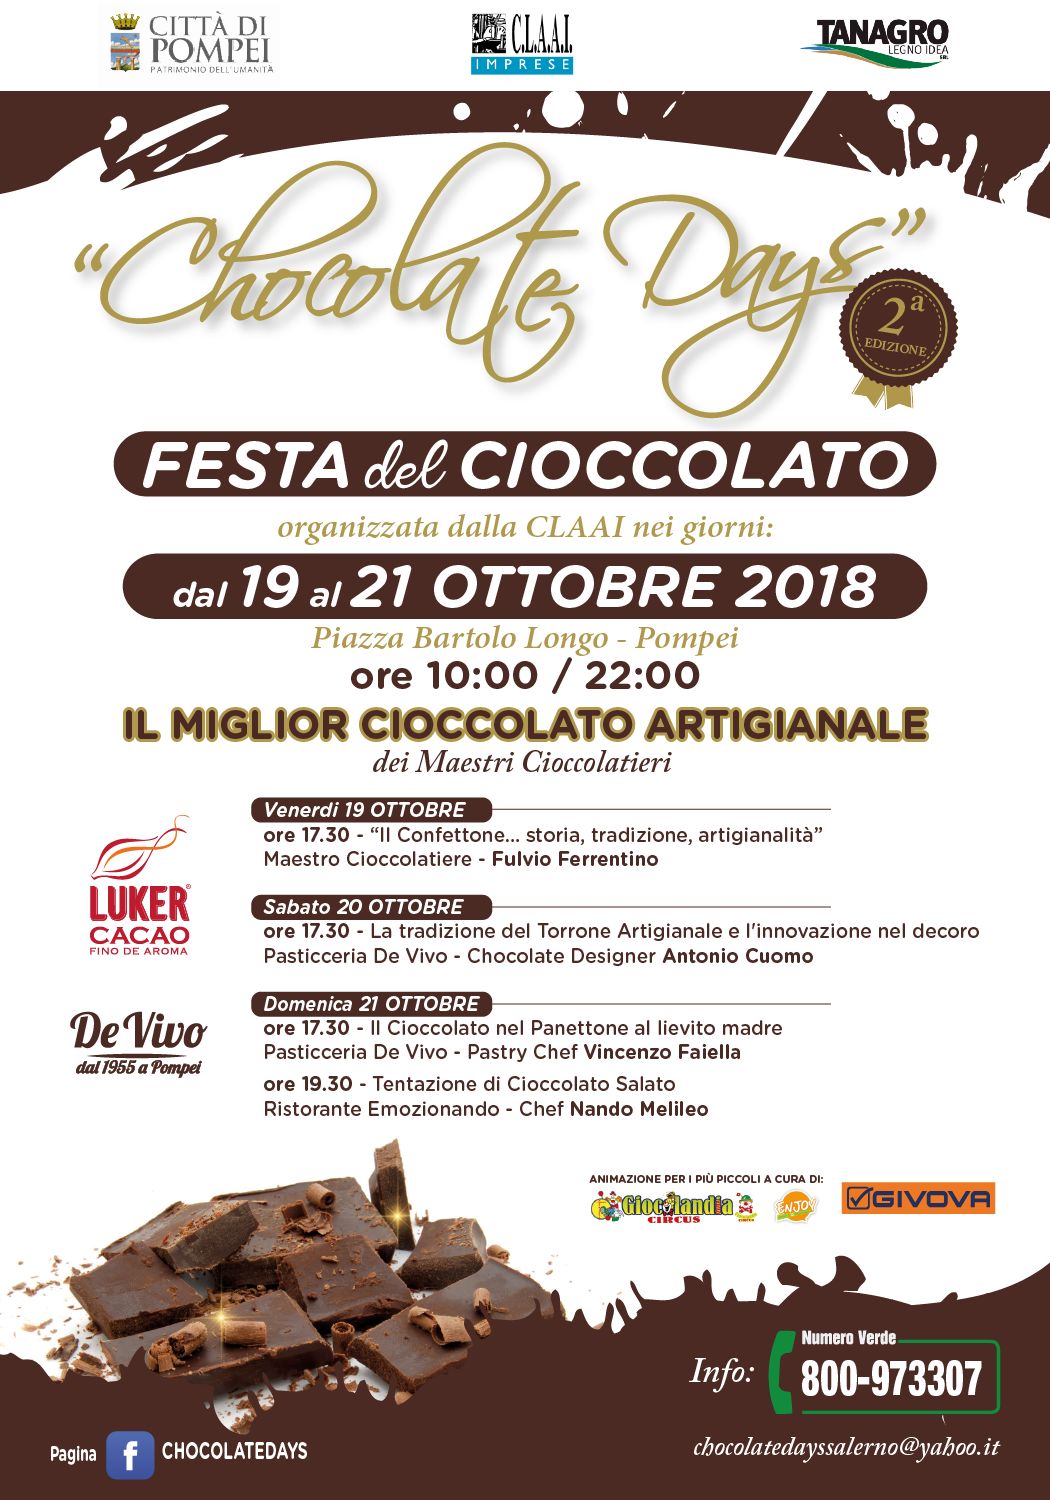 Tutto pronto a Pompei per la Seconda Edizione della Festa del Cioccolato Artigianale  – Chocolate Days